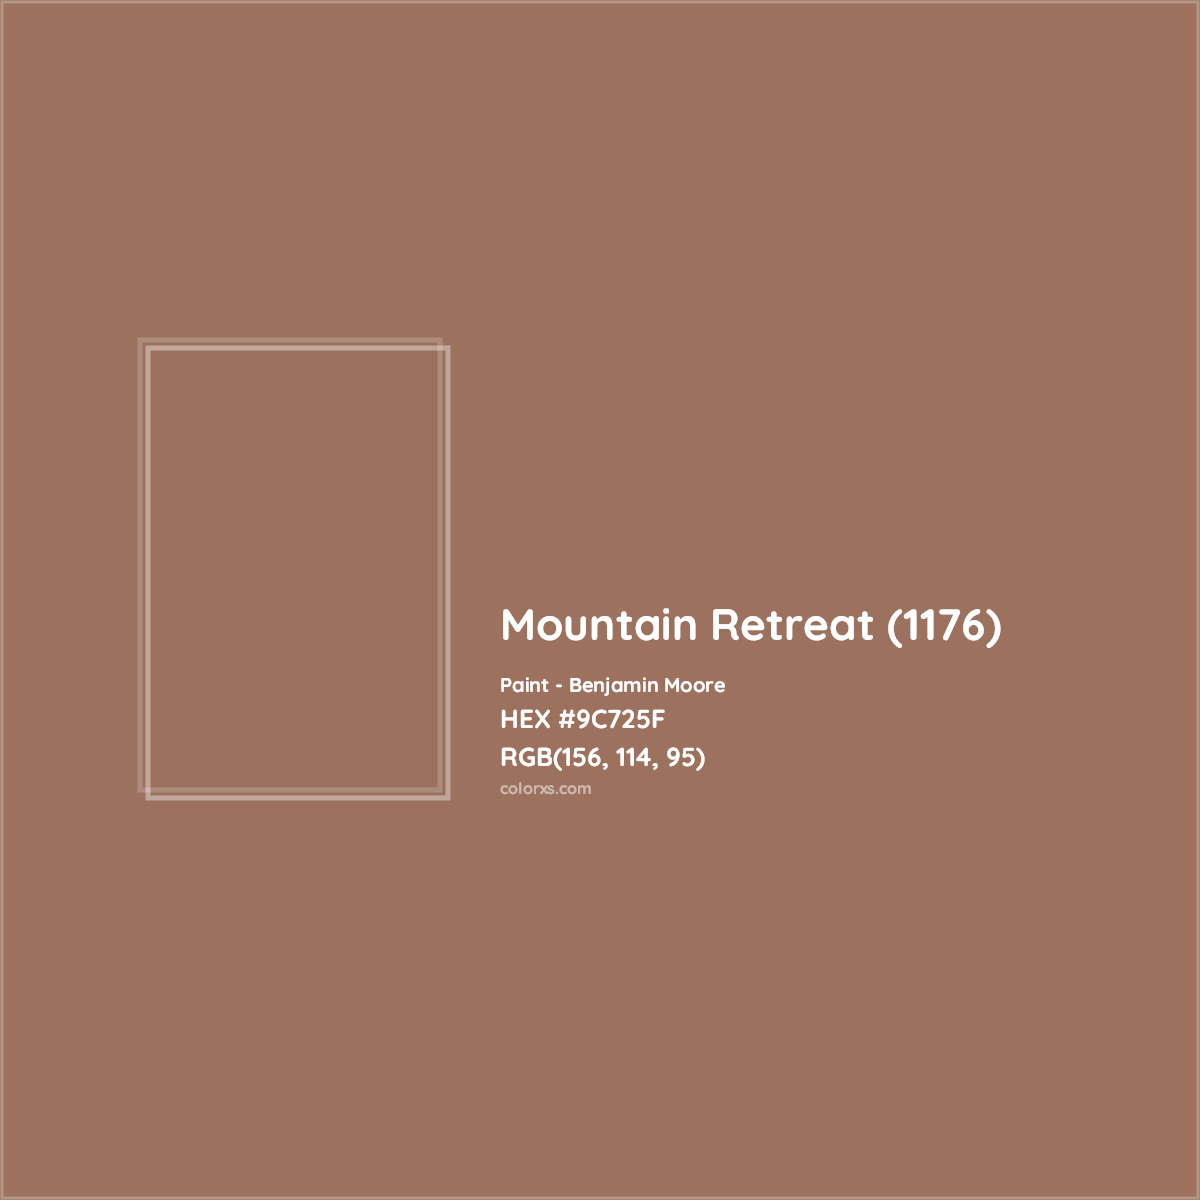 HEX #9C725F Mountain Retreat (1176) Paint Benjamin Moore - Color Code